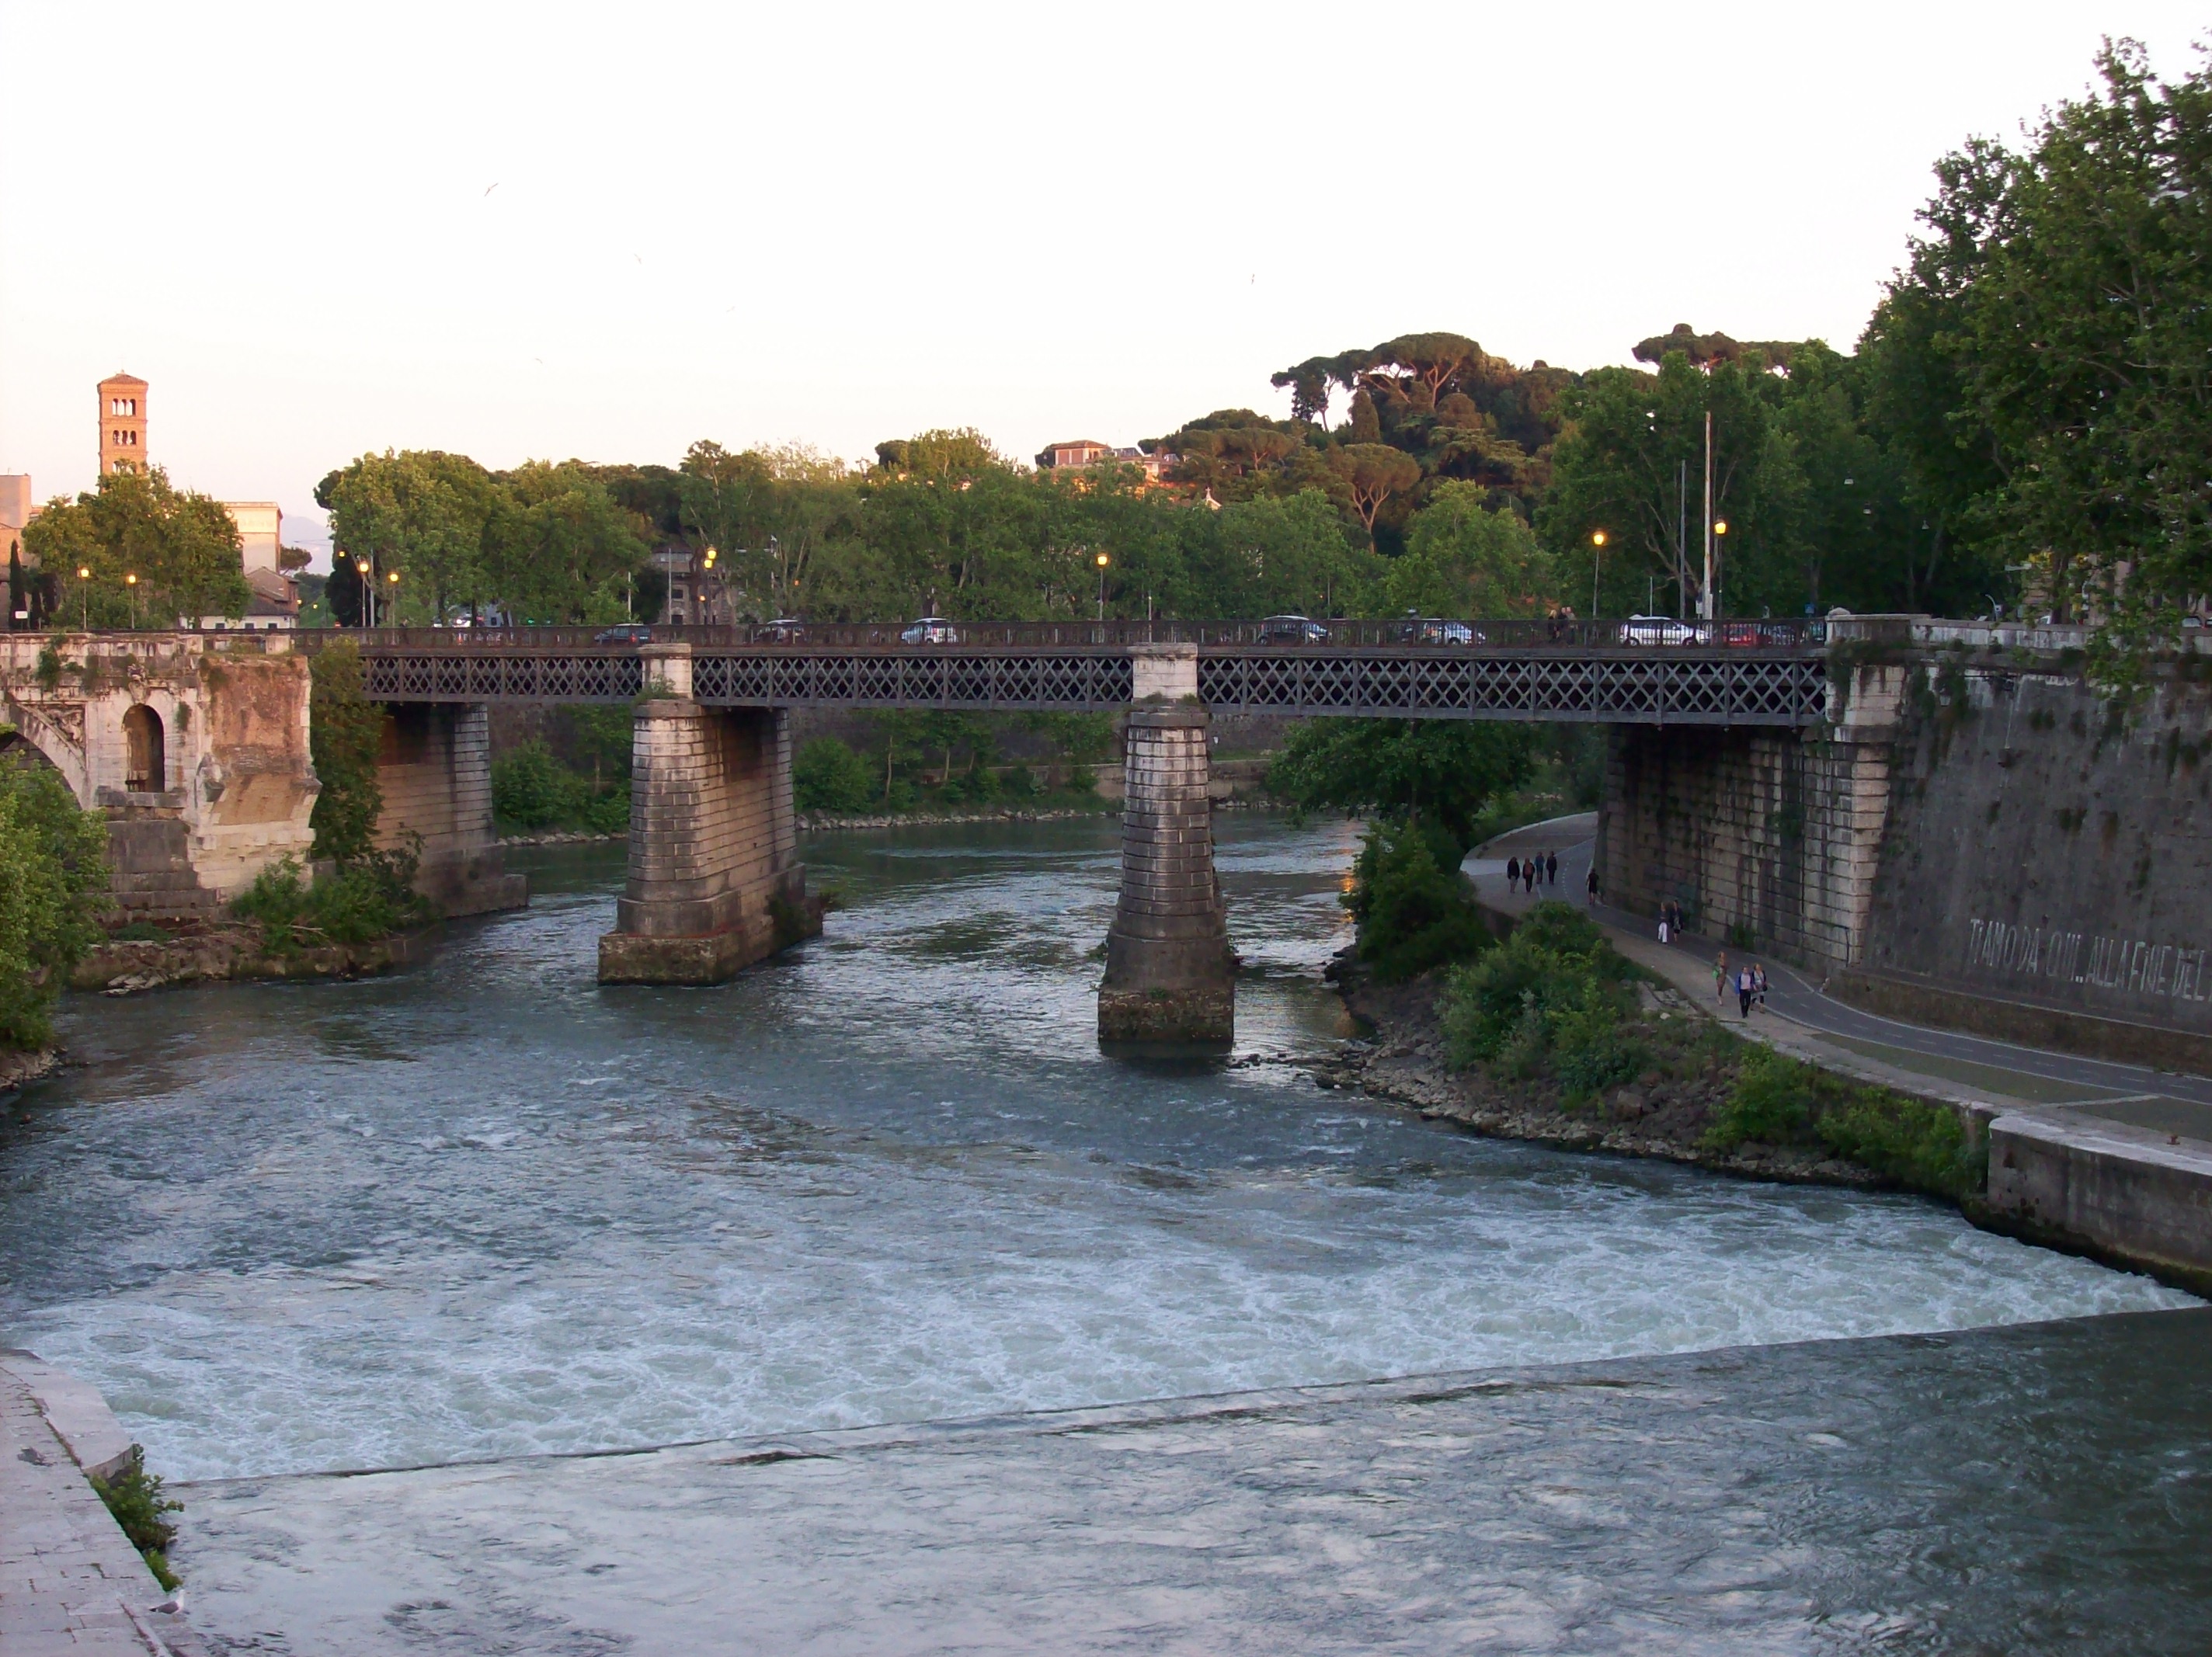 Племя жившее по берегу тибра. Мульвиев мост в Риме. Понте Палатино в Риме. Понте Мильвио в Риме.